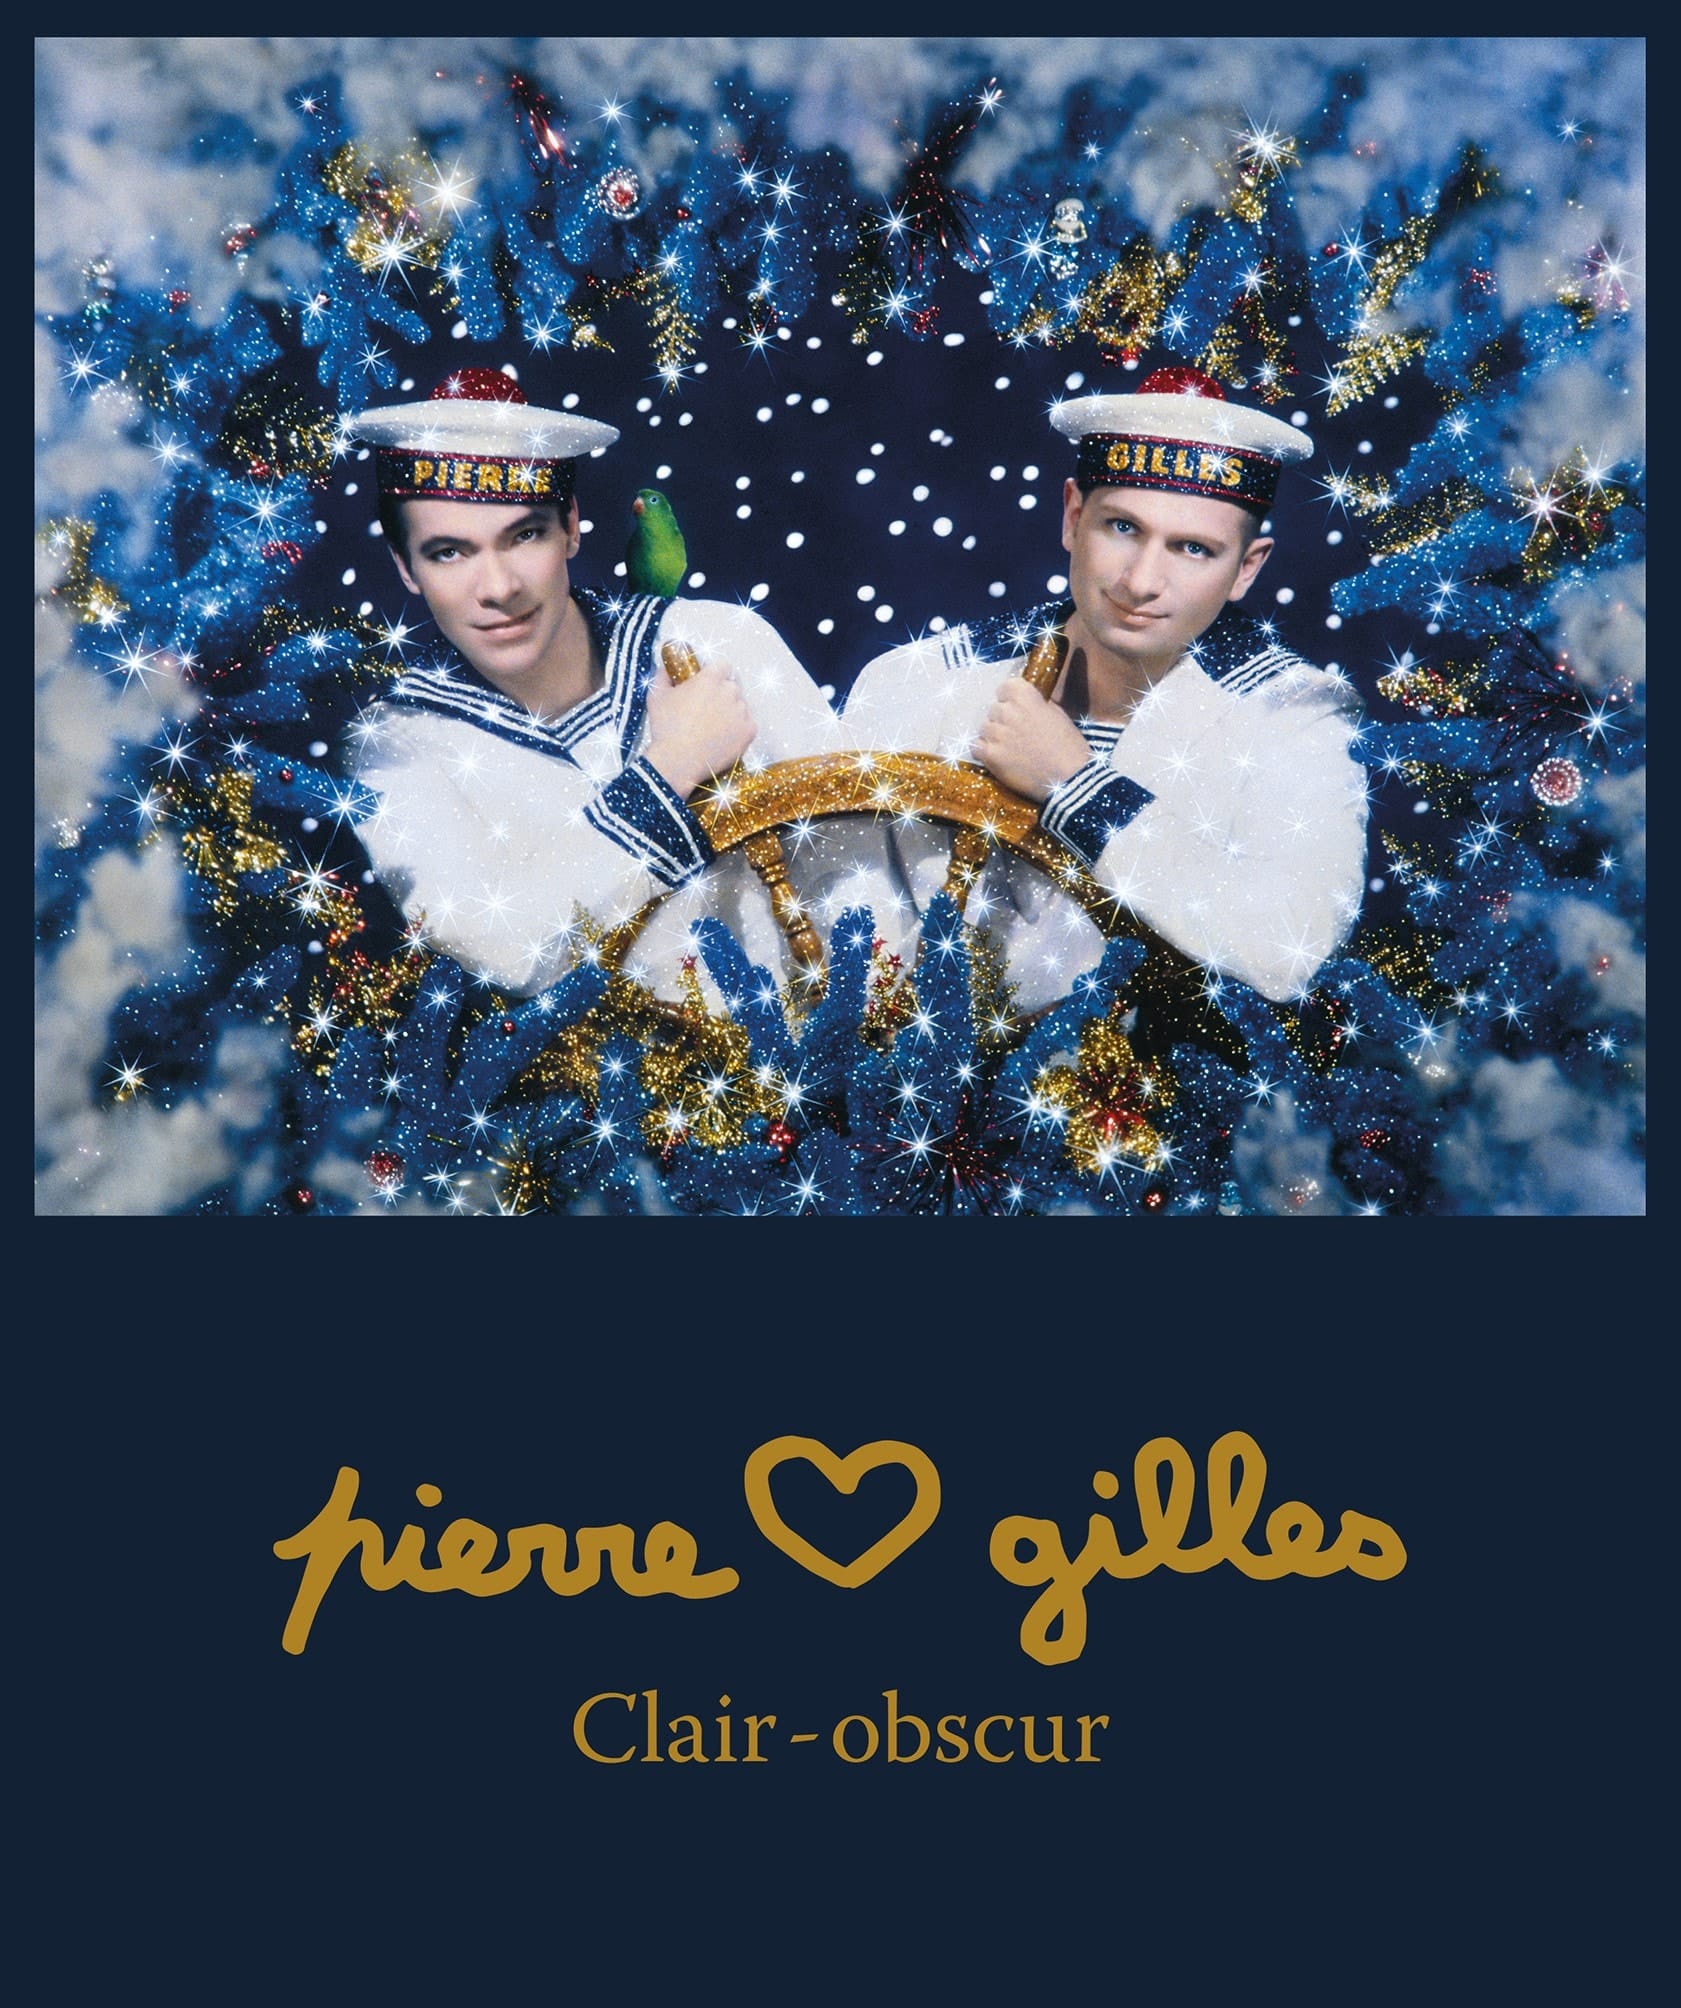 Pierre et Gilles. Clair-obscur Musée d'Ixelles affiche